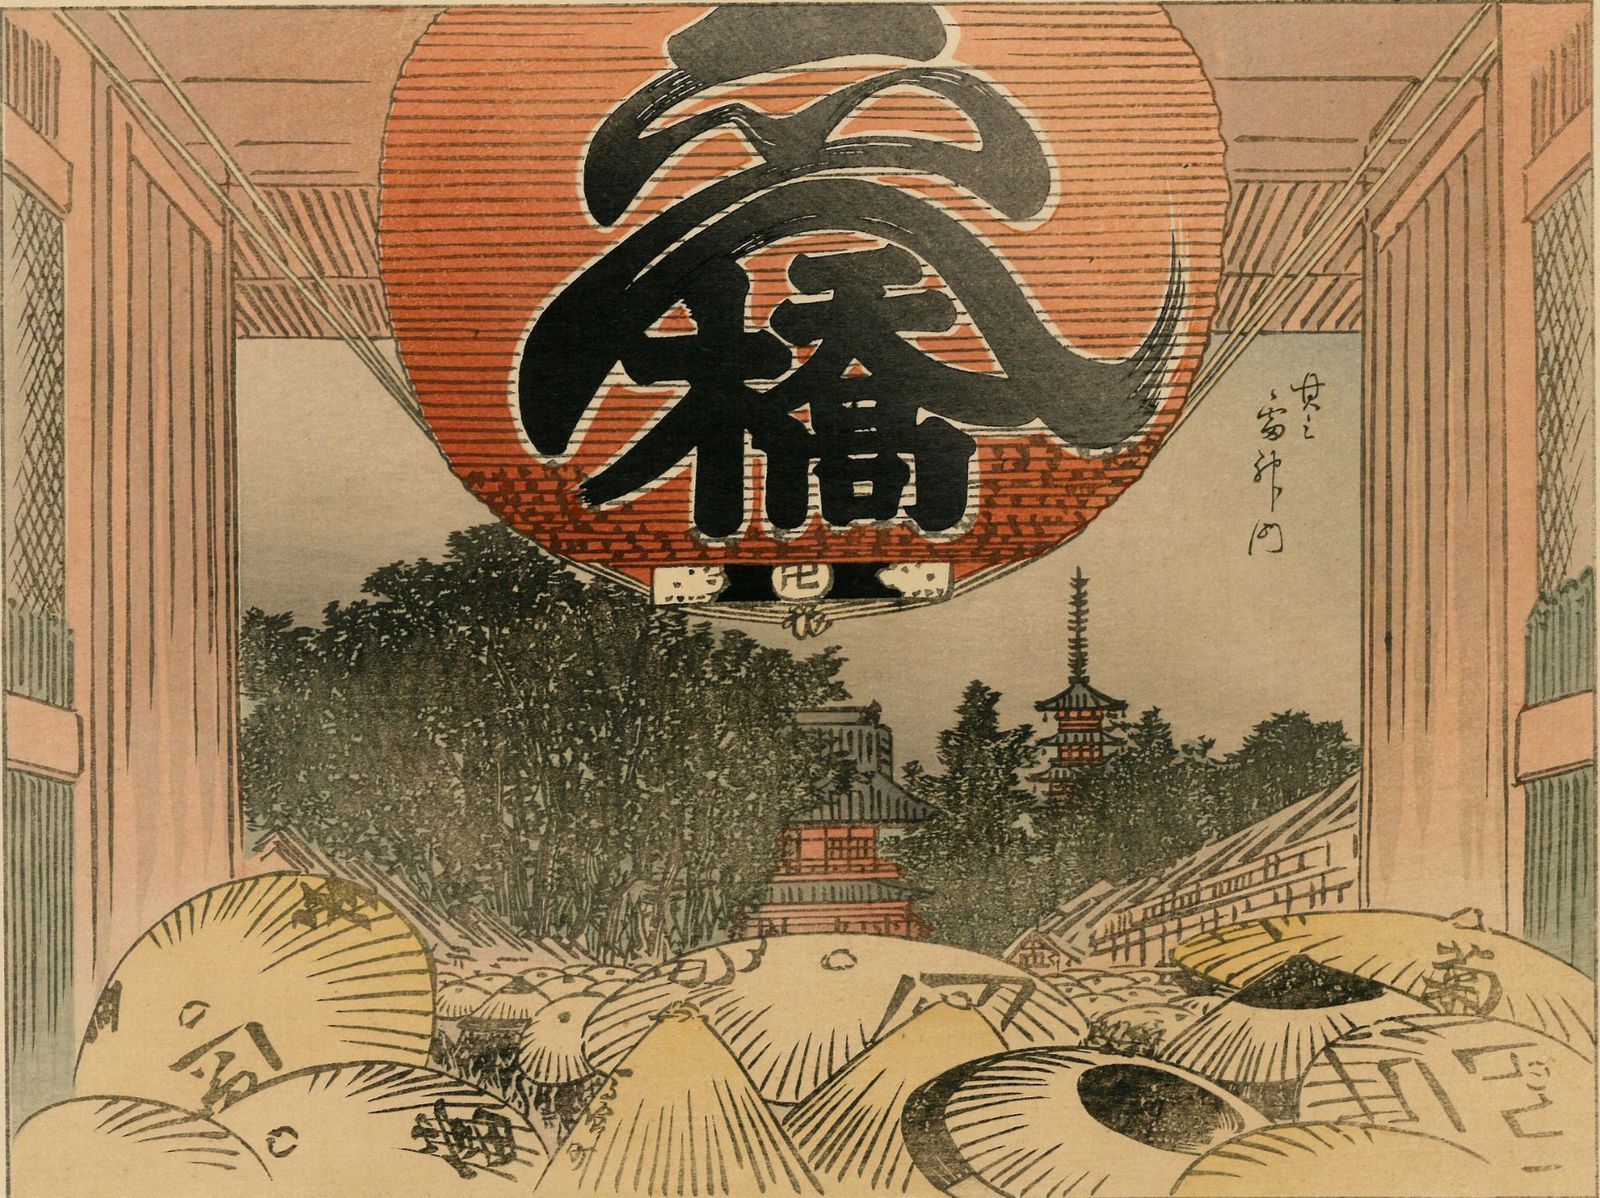 Vends véritables Estampes Japonaises Hiroshige de sa rare série des 36 Vues  du Mont Fuji - paris-vente-veritables-estampes-objets-art-japon.overblog.com